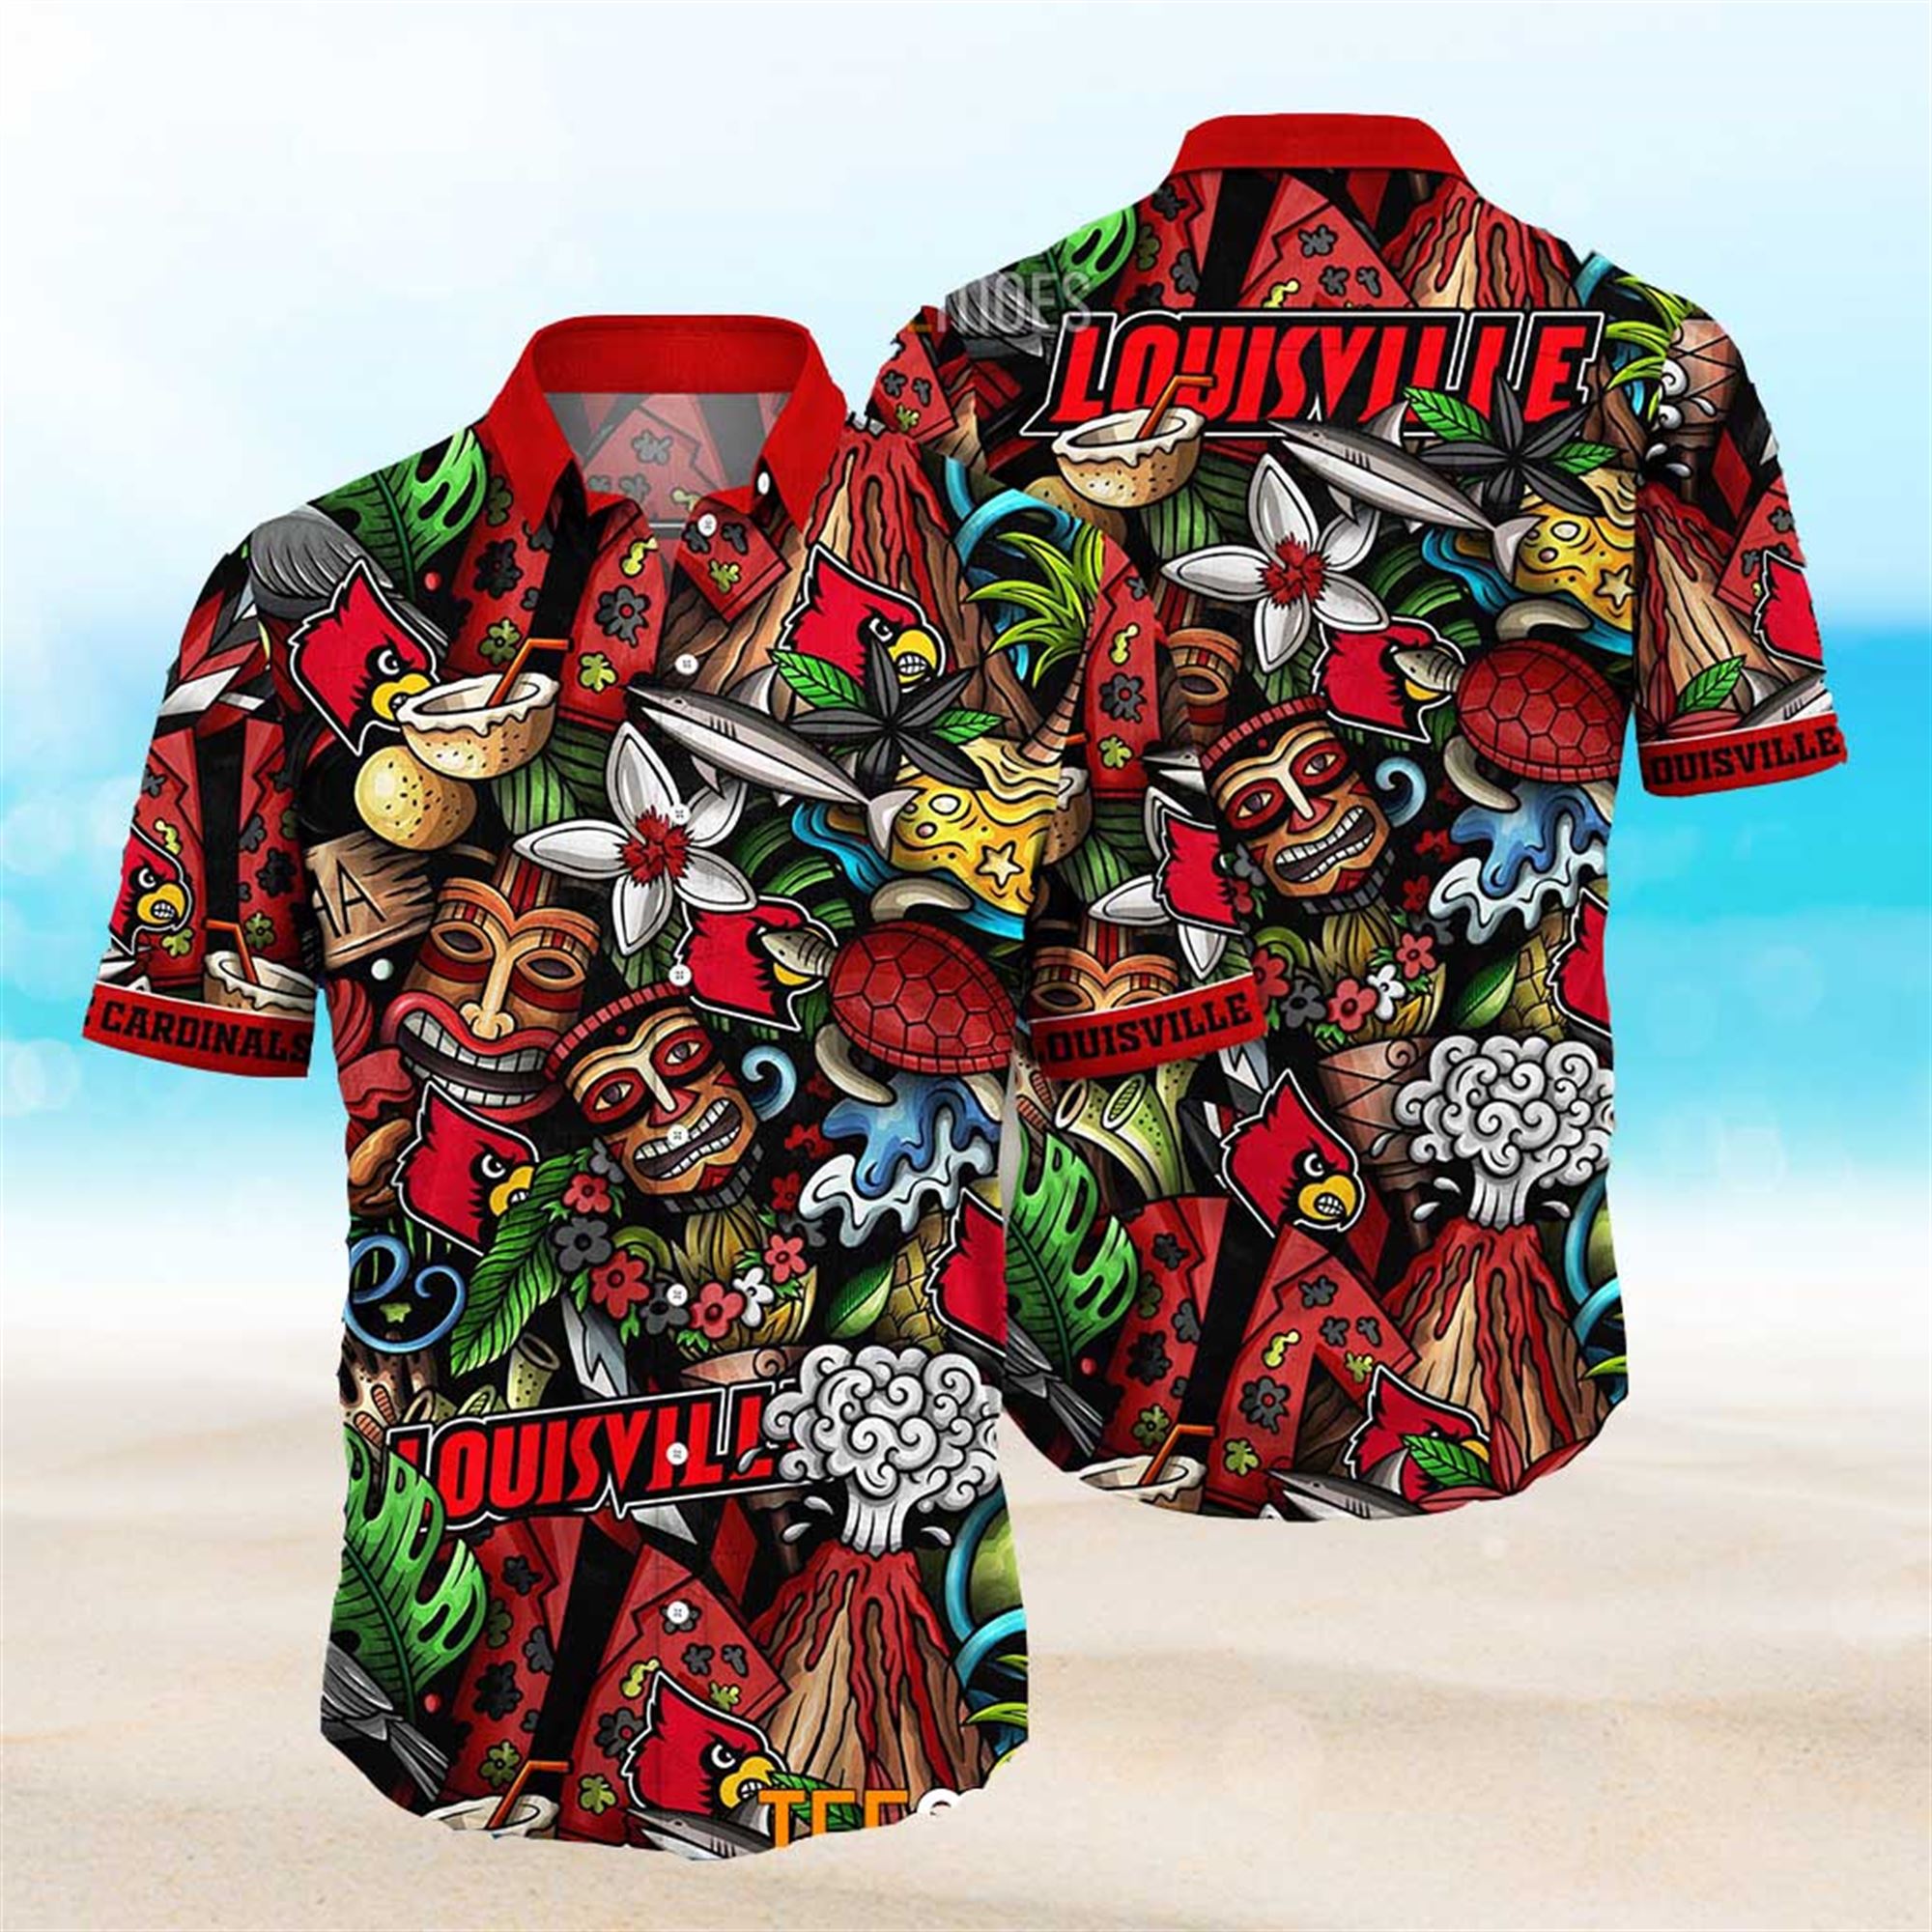 Louisville Cardinals Trending Hawaiian Shirt For Fans